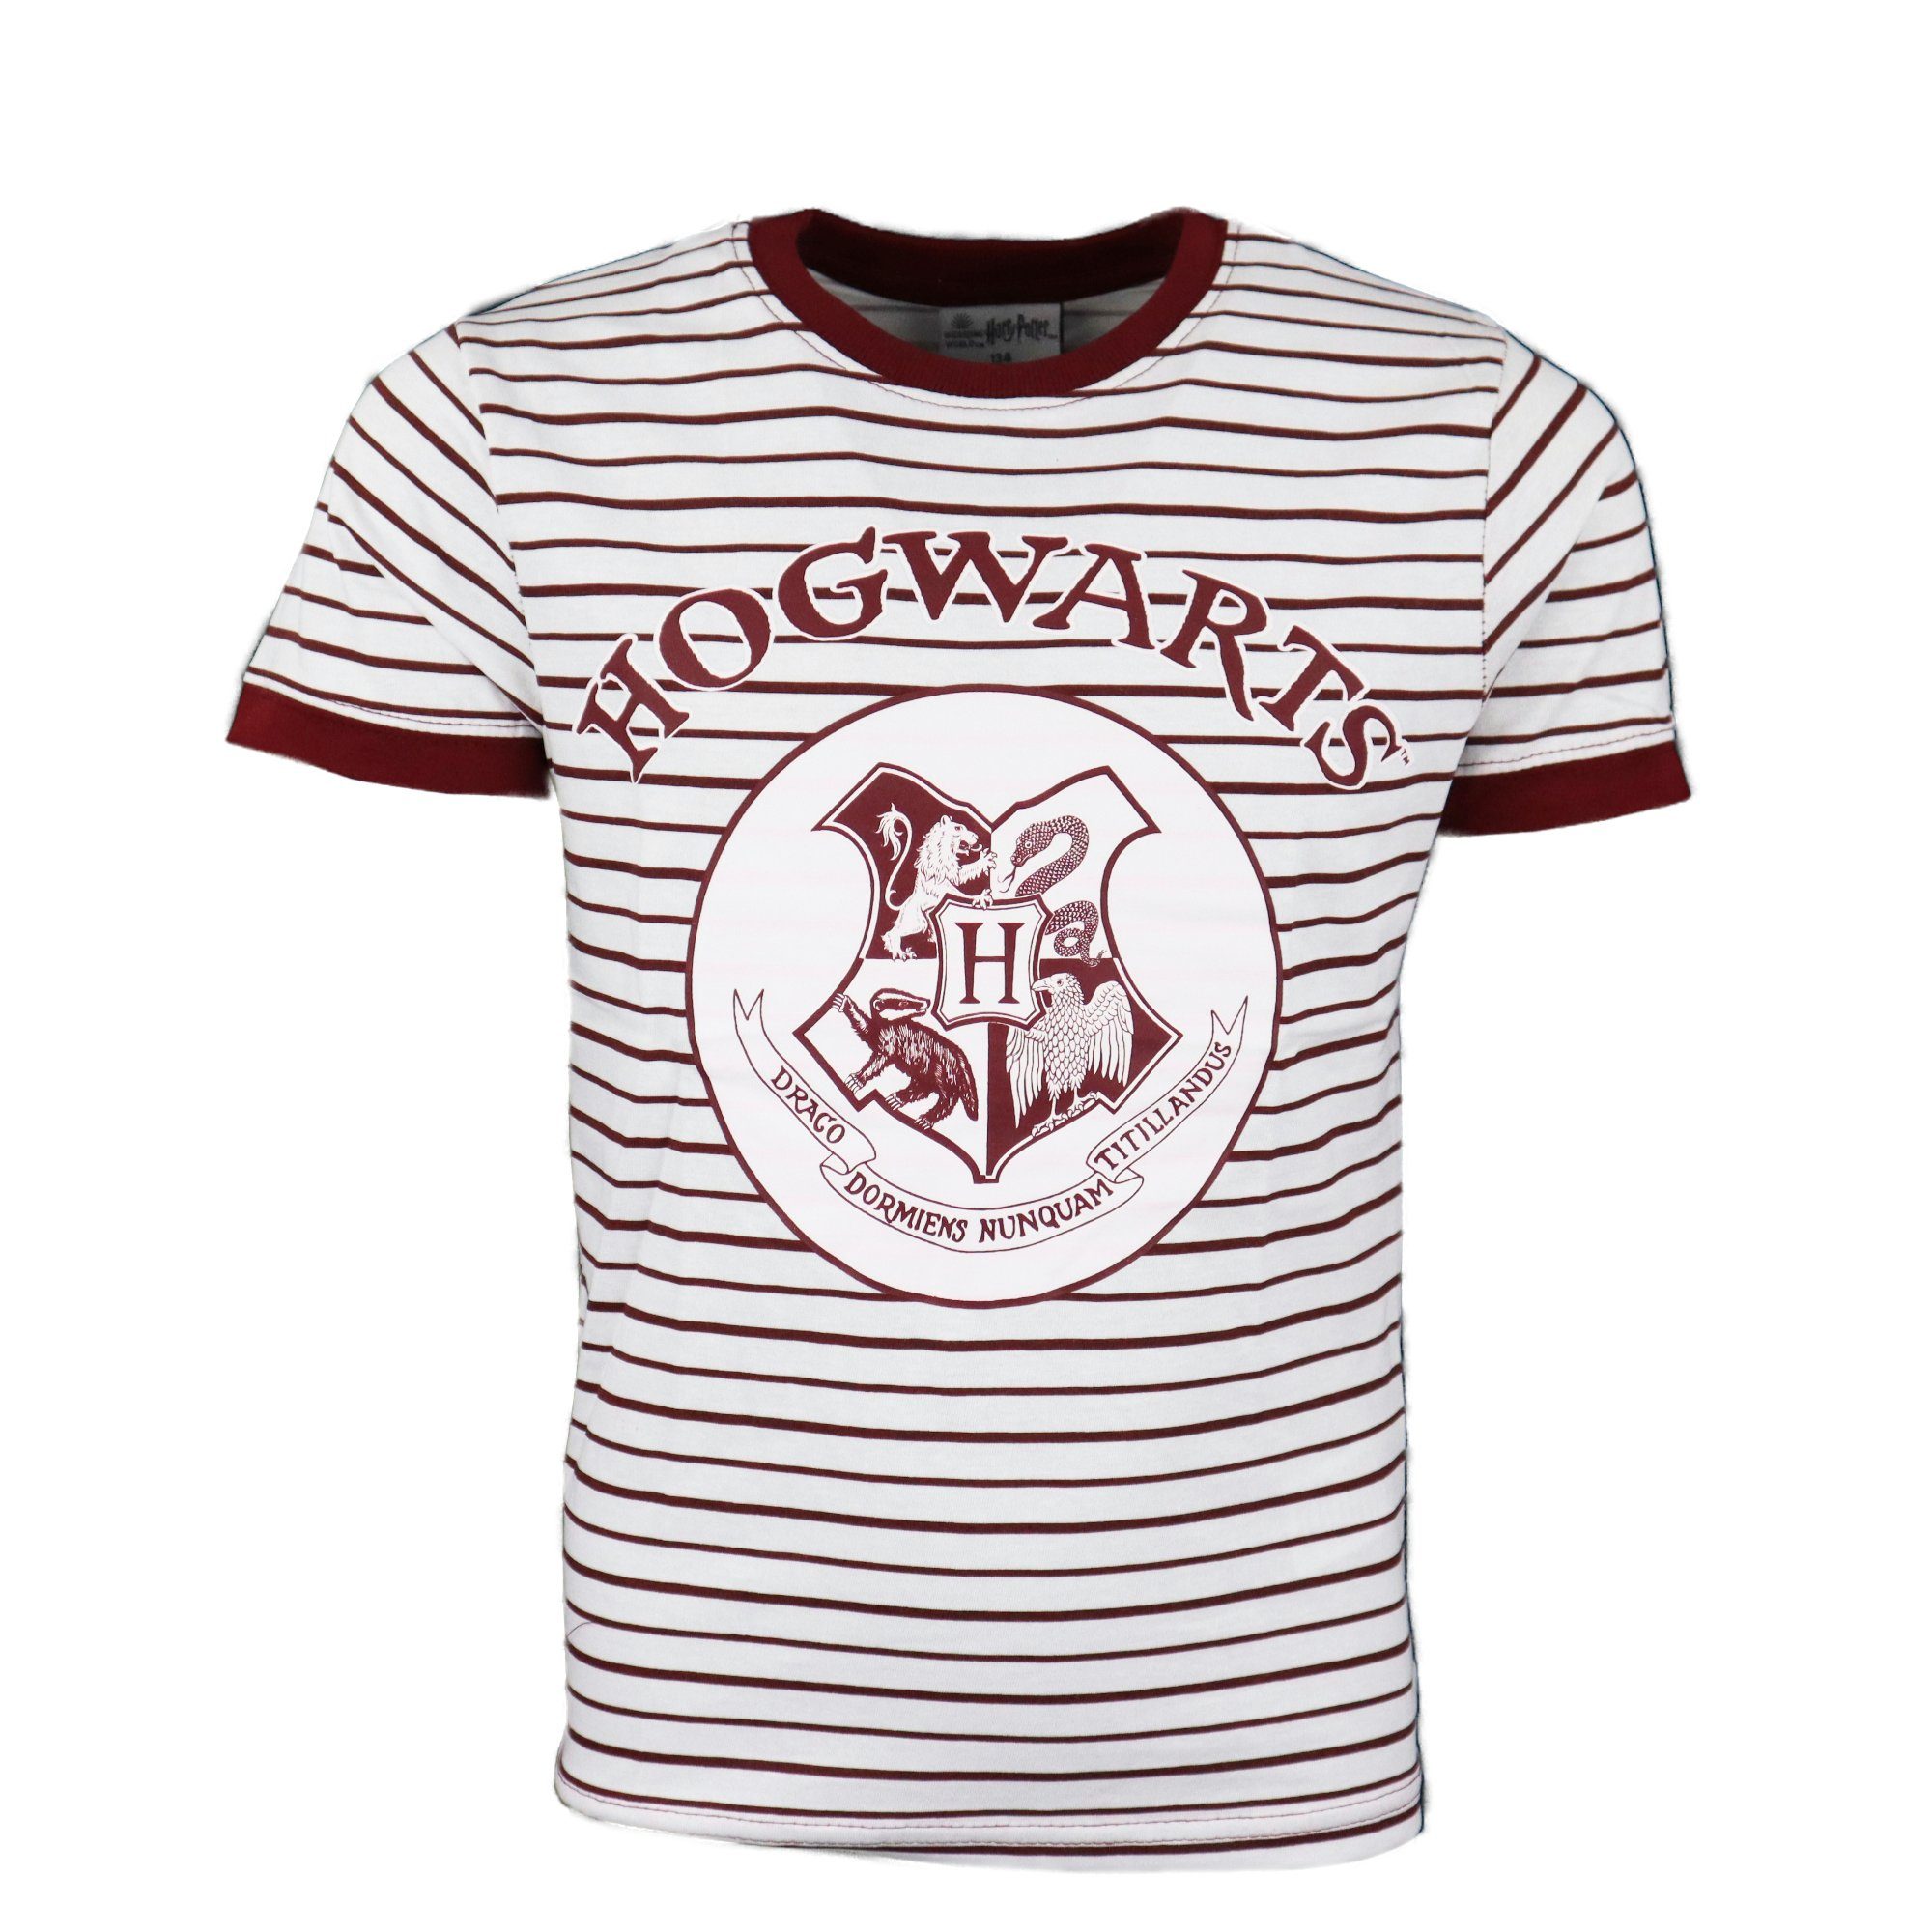 Harry Potter Print-Shirt Harry Potter Hogwarts Scool Jugend Kinder T-Shirt Gr. 134 bis 164, Baumwolle